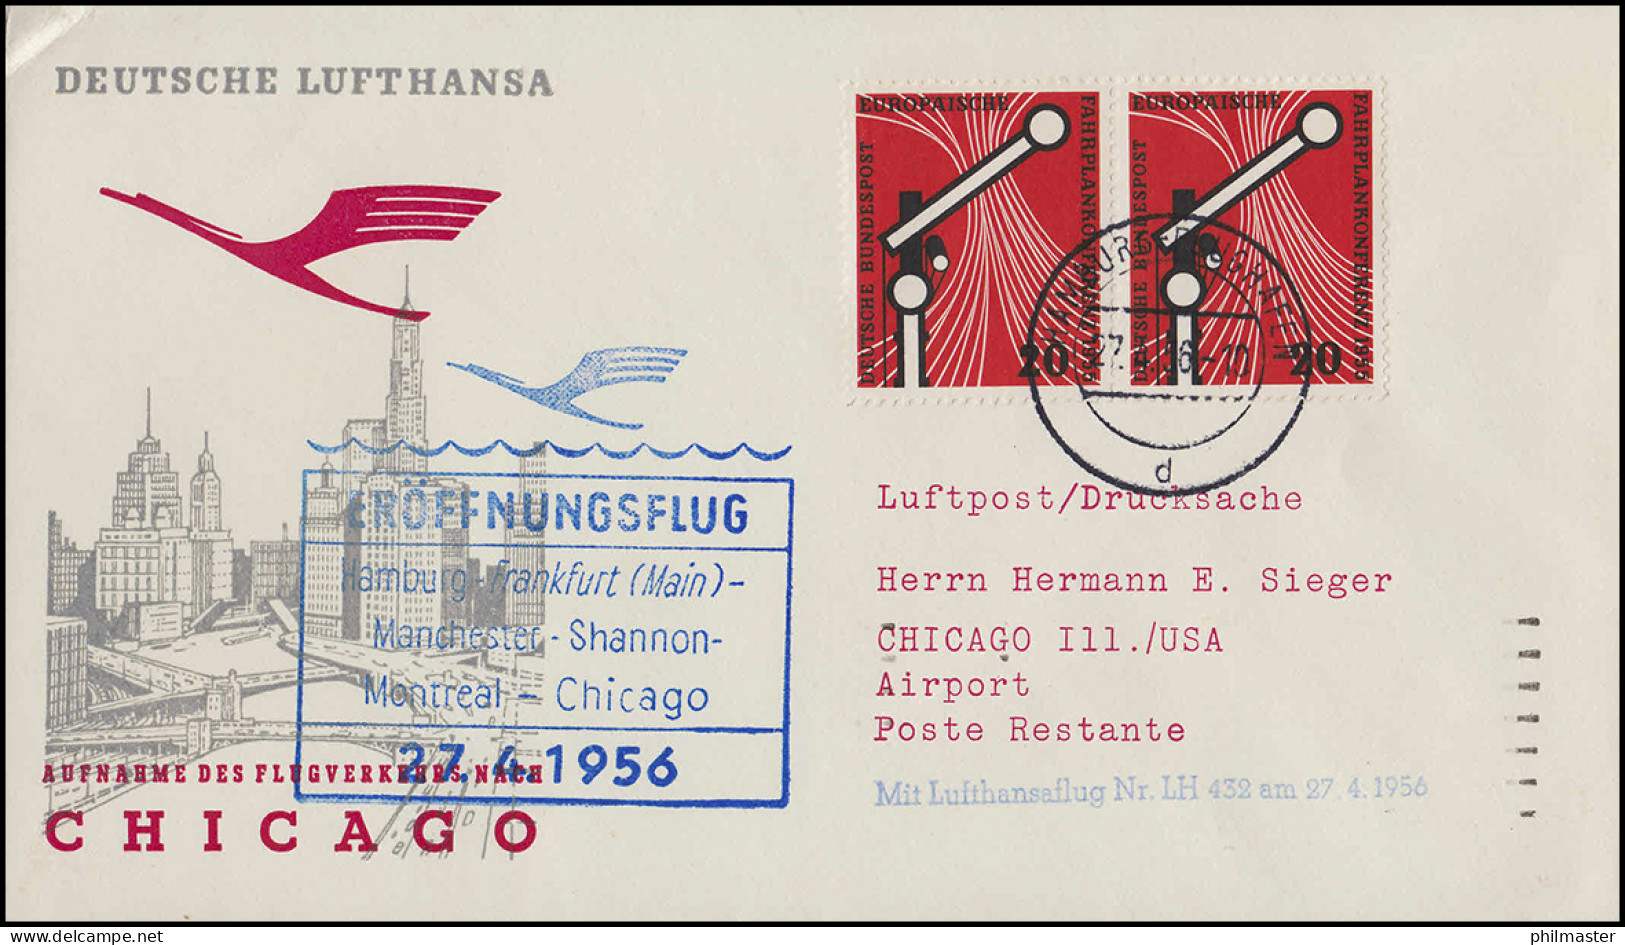 Eröffnungsflug Lufthansa LH 432 Chicago, Hamburg 27.4.1956 / Chicago 28.4.56 - First Flight Covers